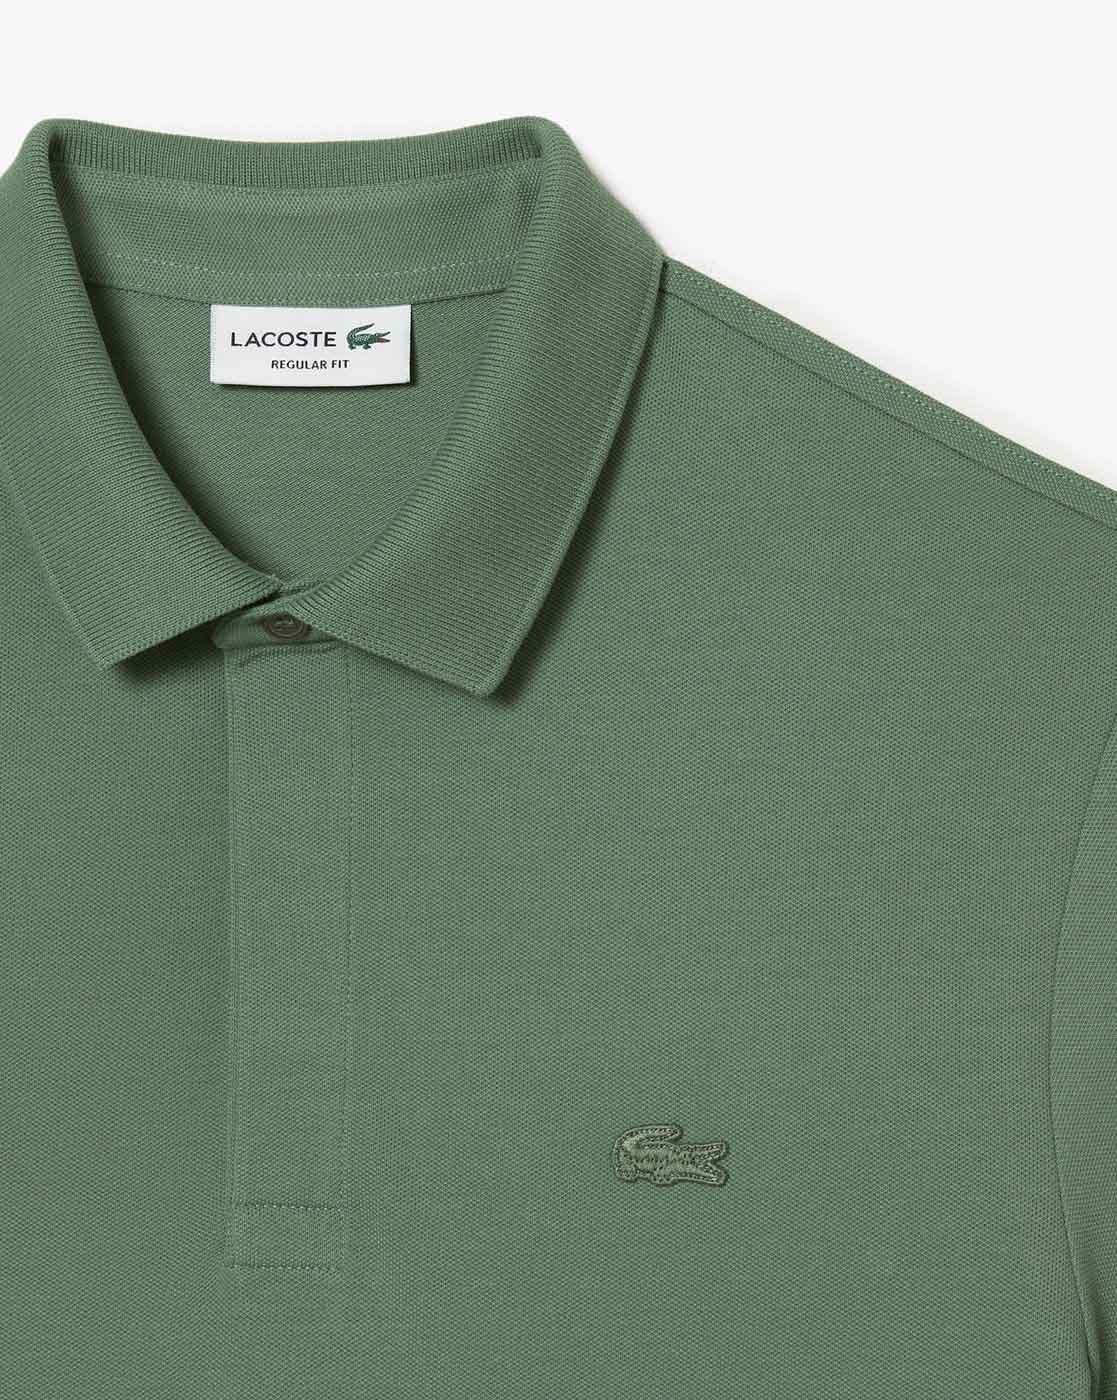 hjort forfriskende Beliggenhed Buy Green Tshirts for Men by Lacoste Online | Ajio.com